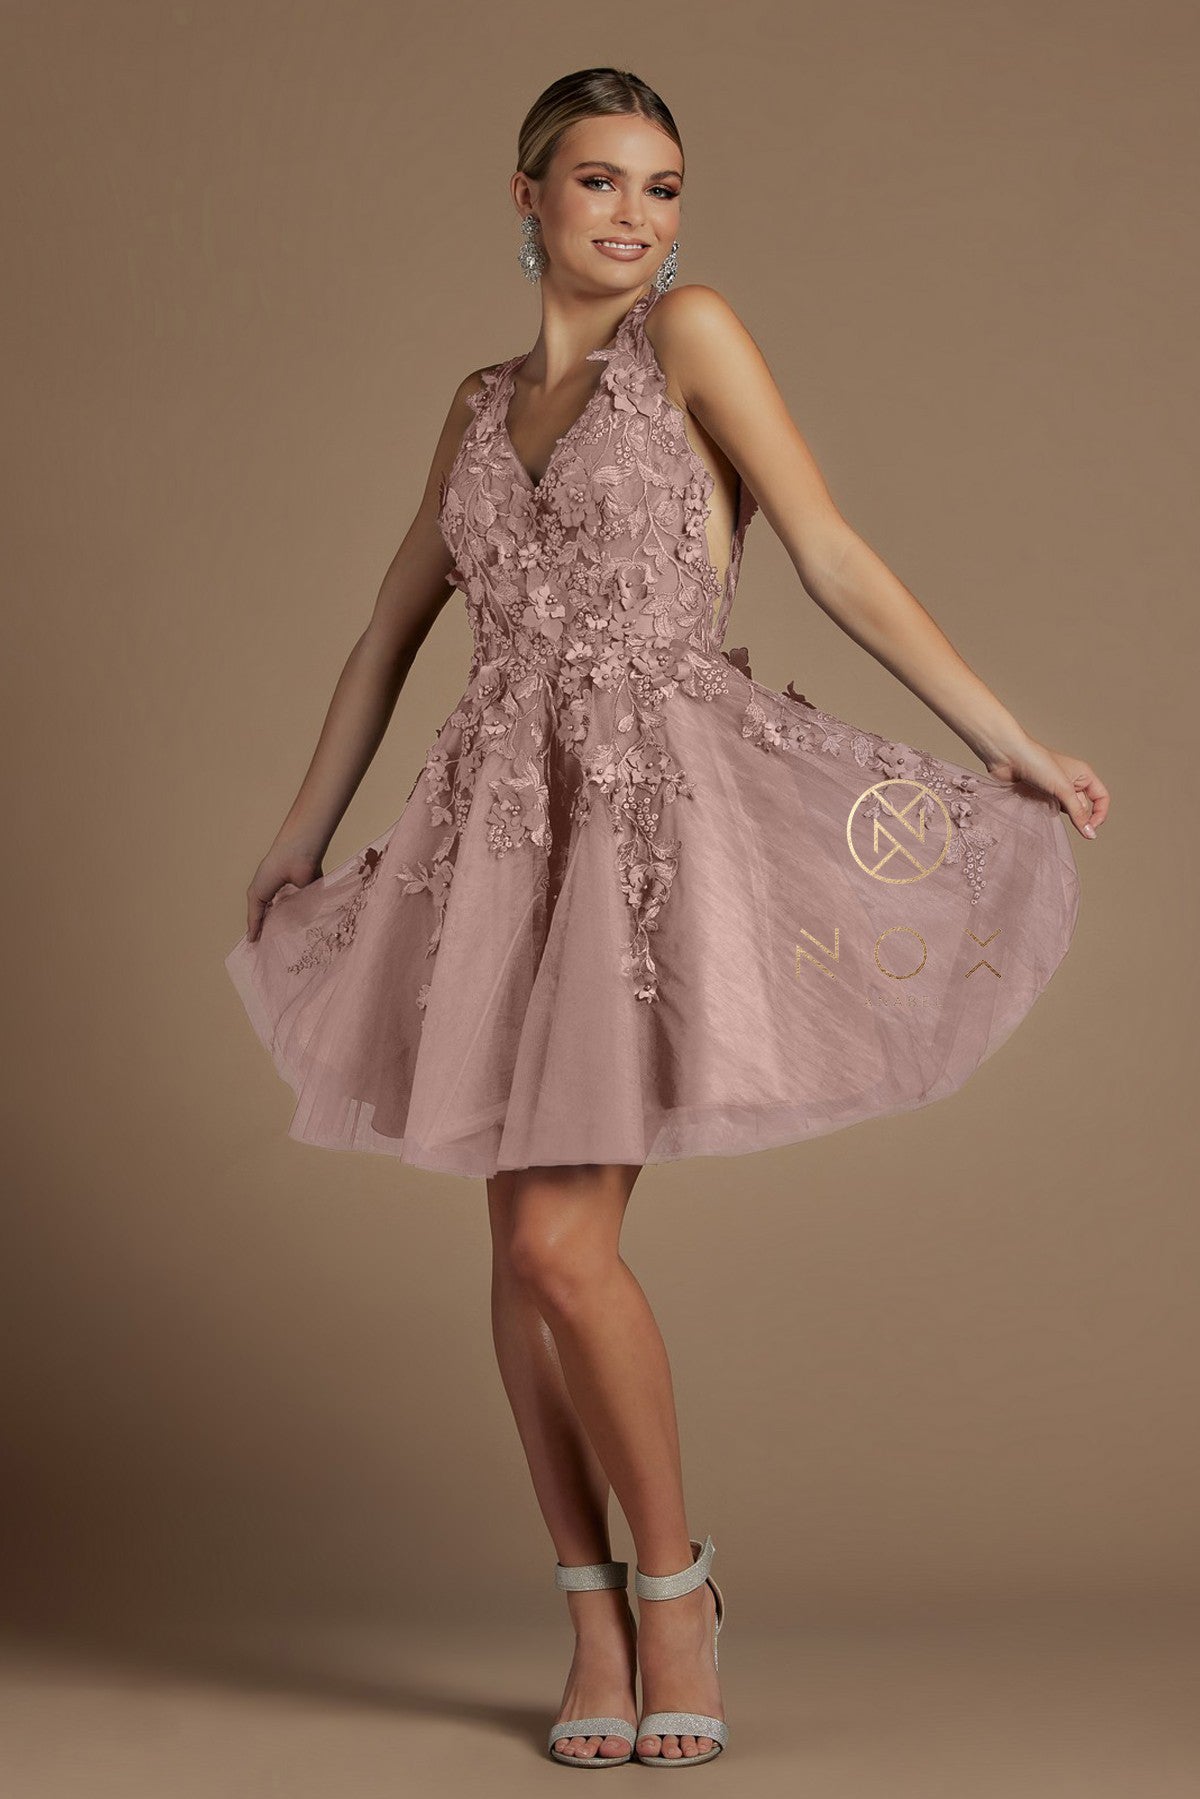 Short 3D Floral Applique Dress By Nox Anabel -R708